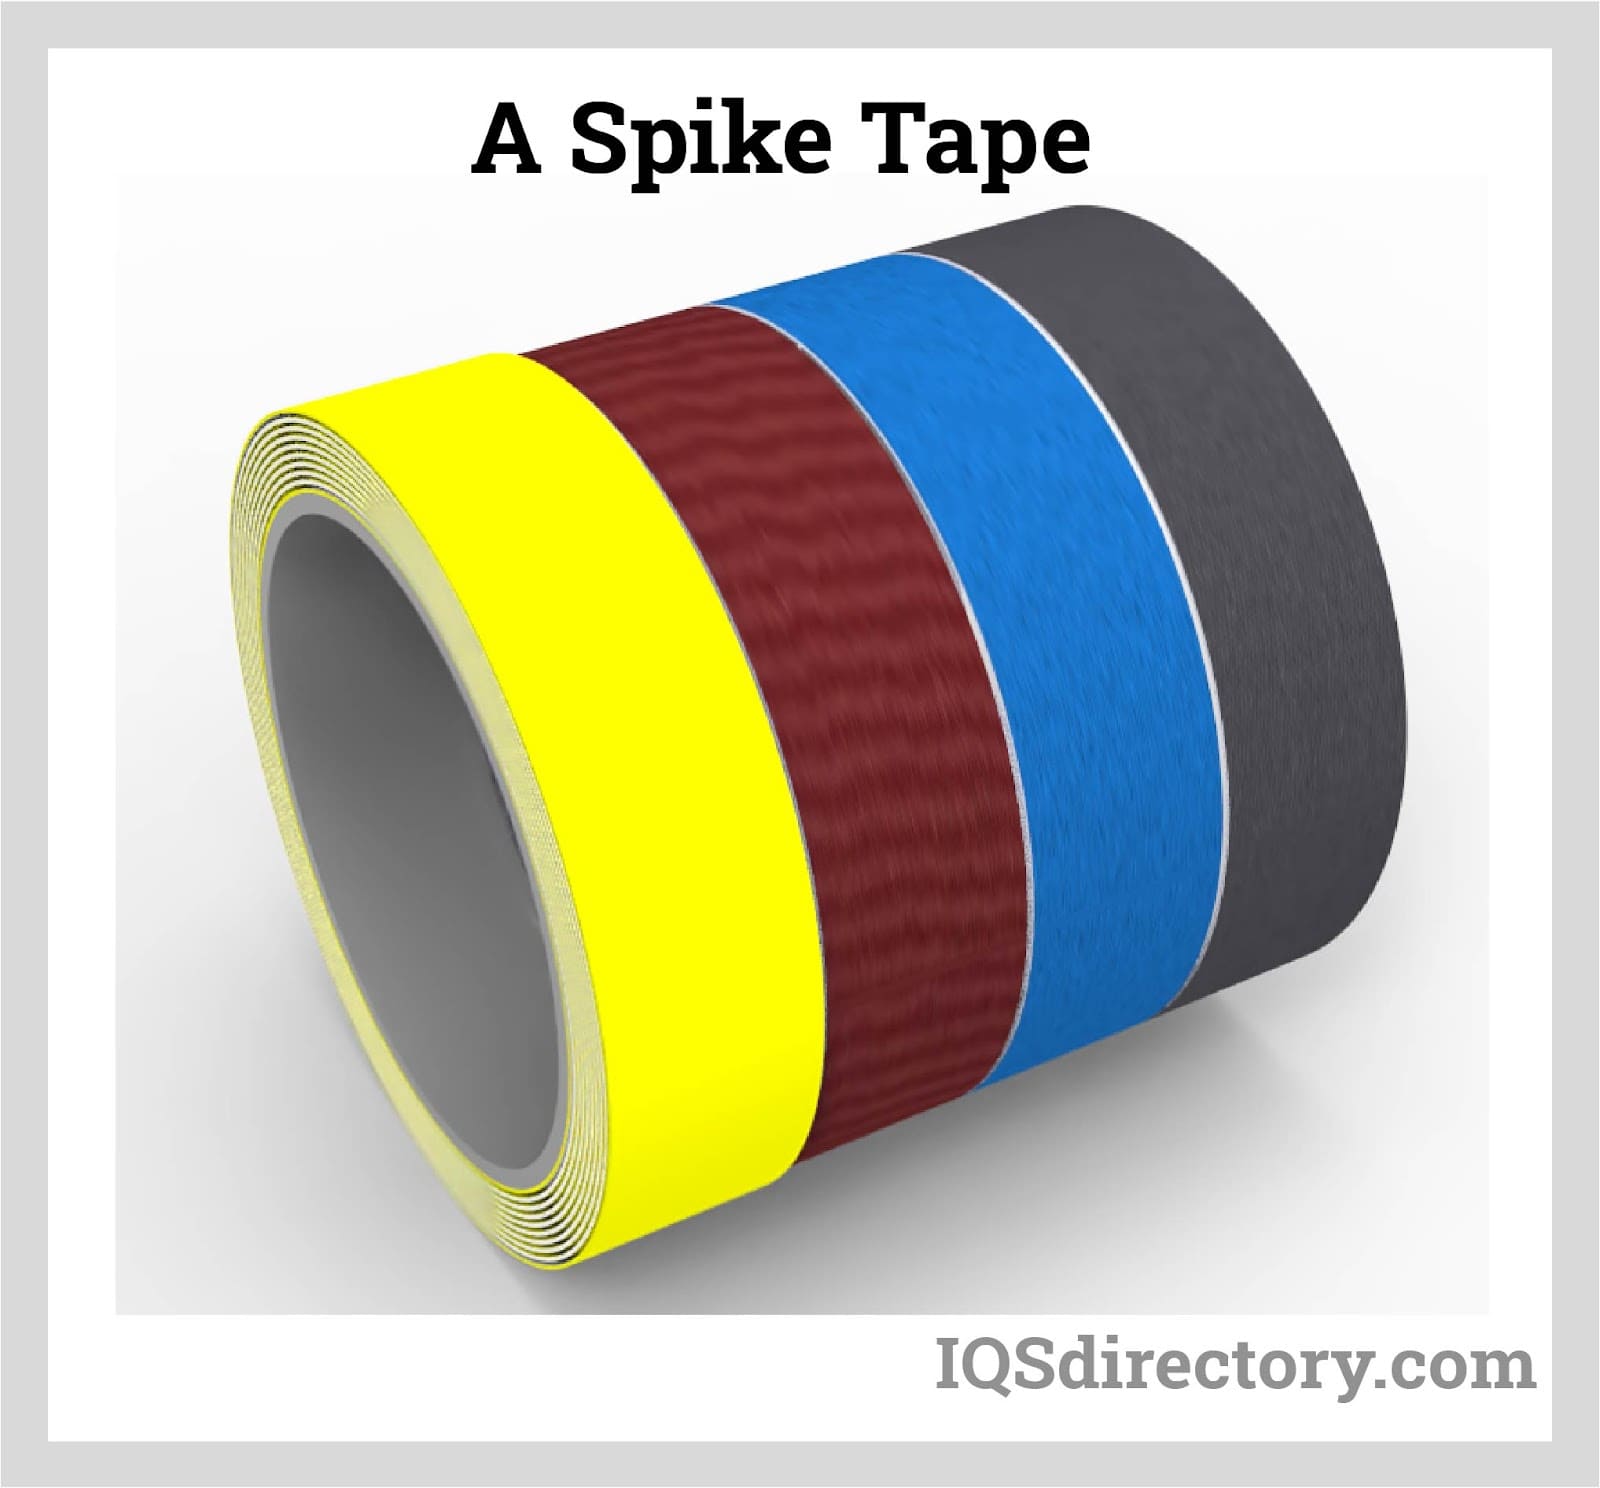 A Spike Tape